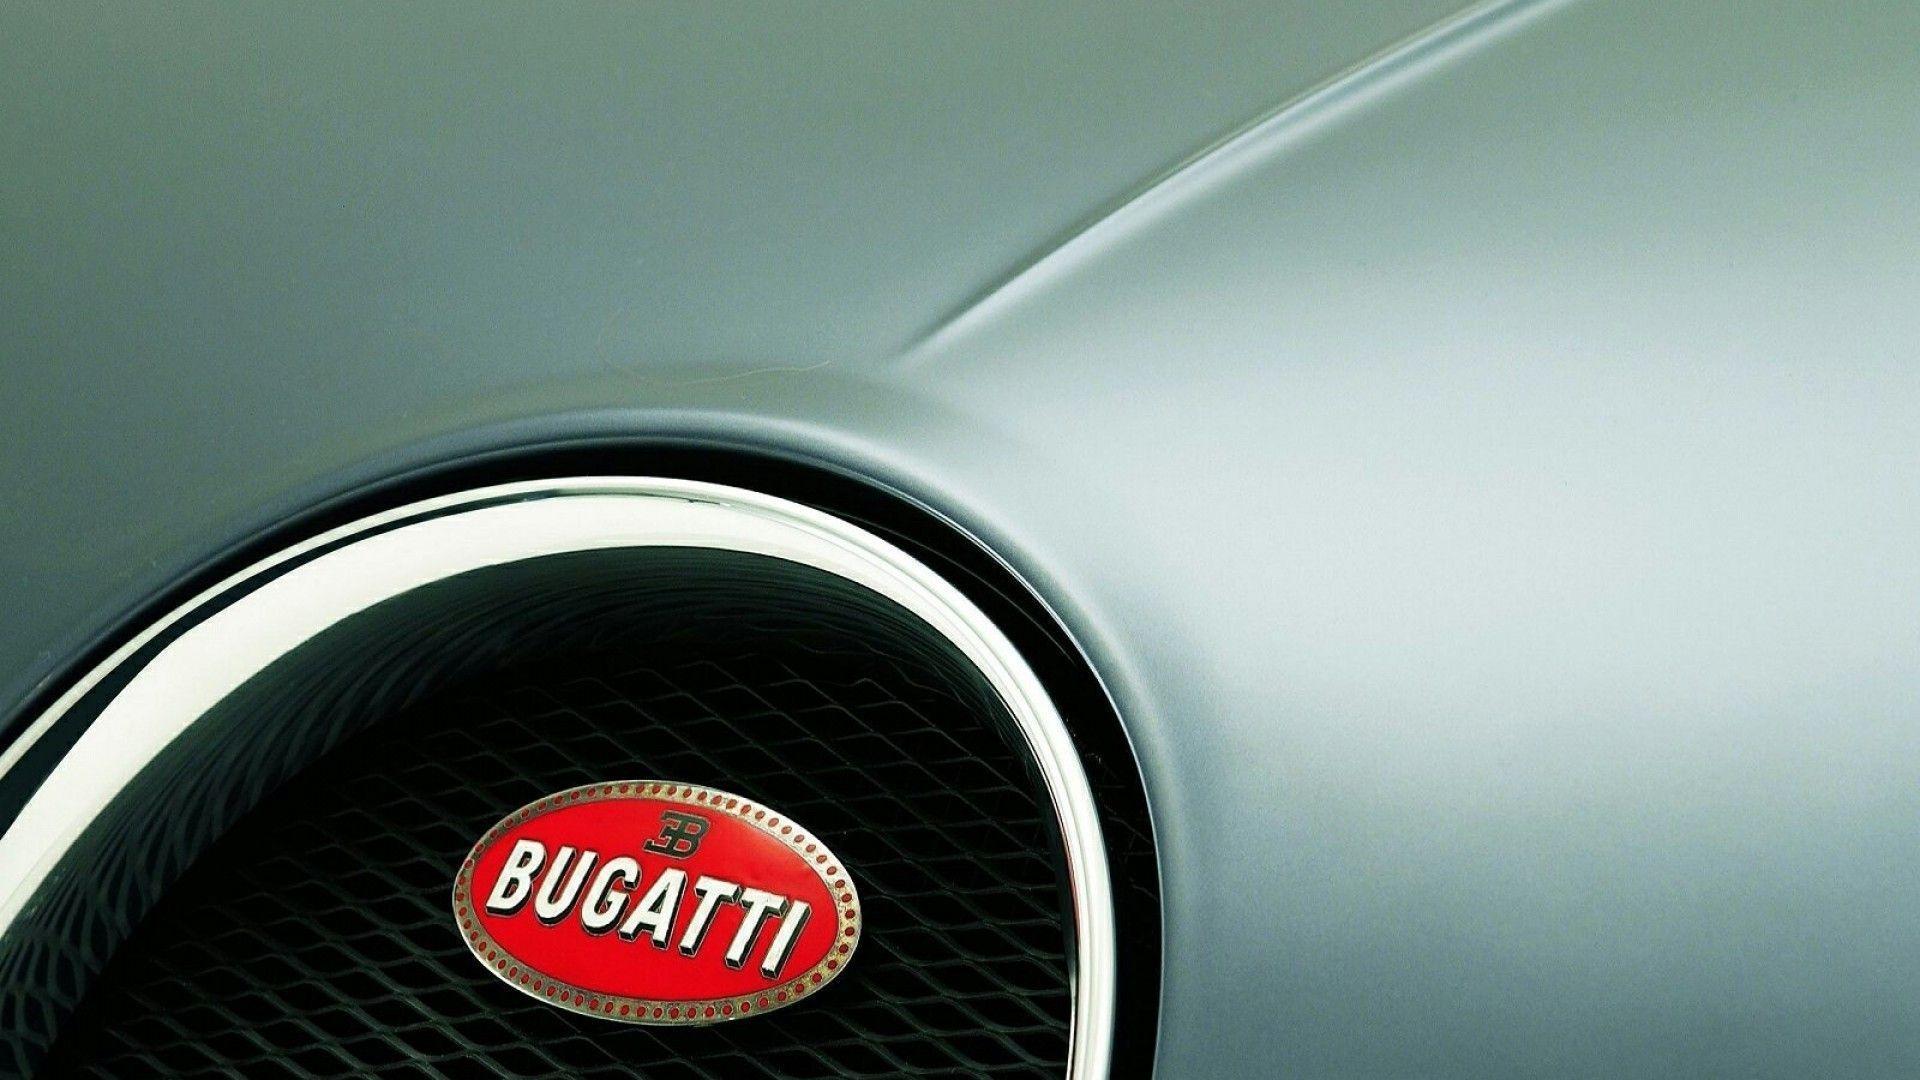 Bugatti Brand Logo Design Background HD Wallpaper Bugatti Brand